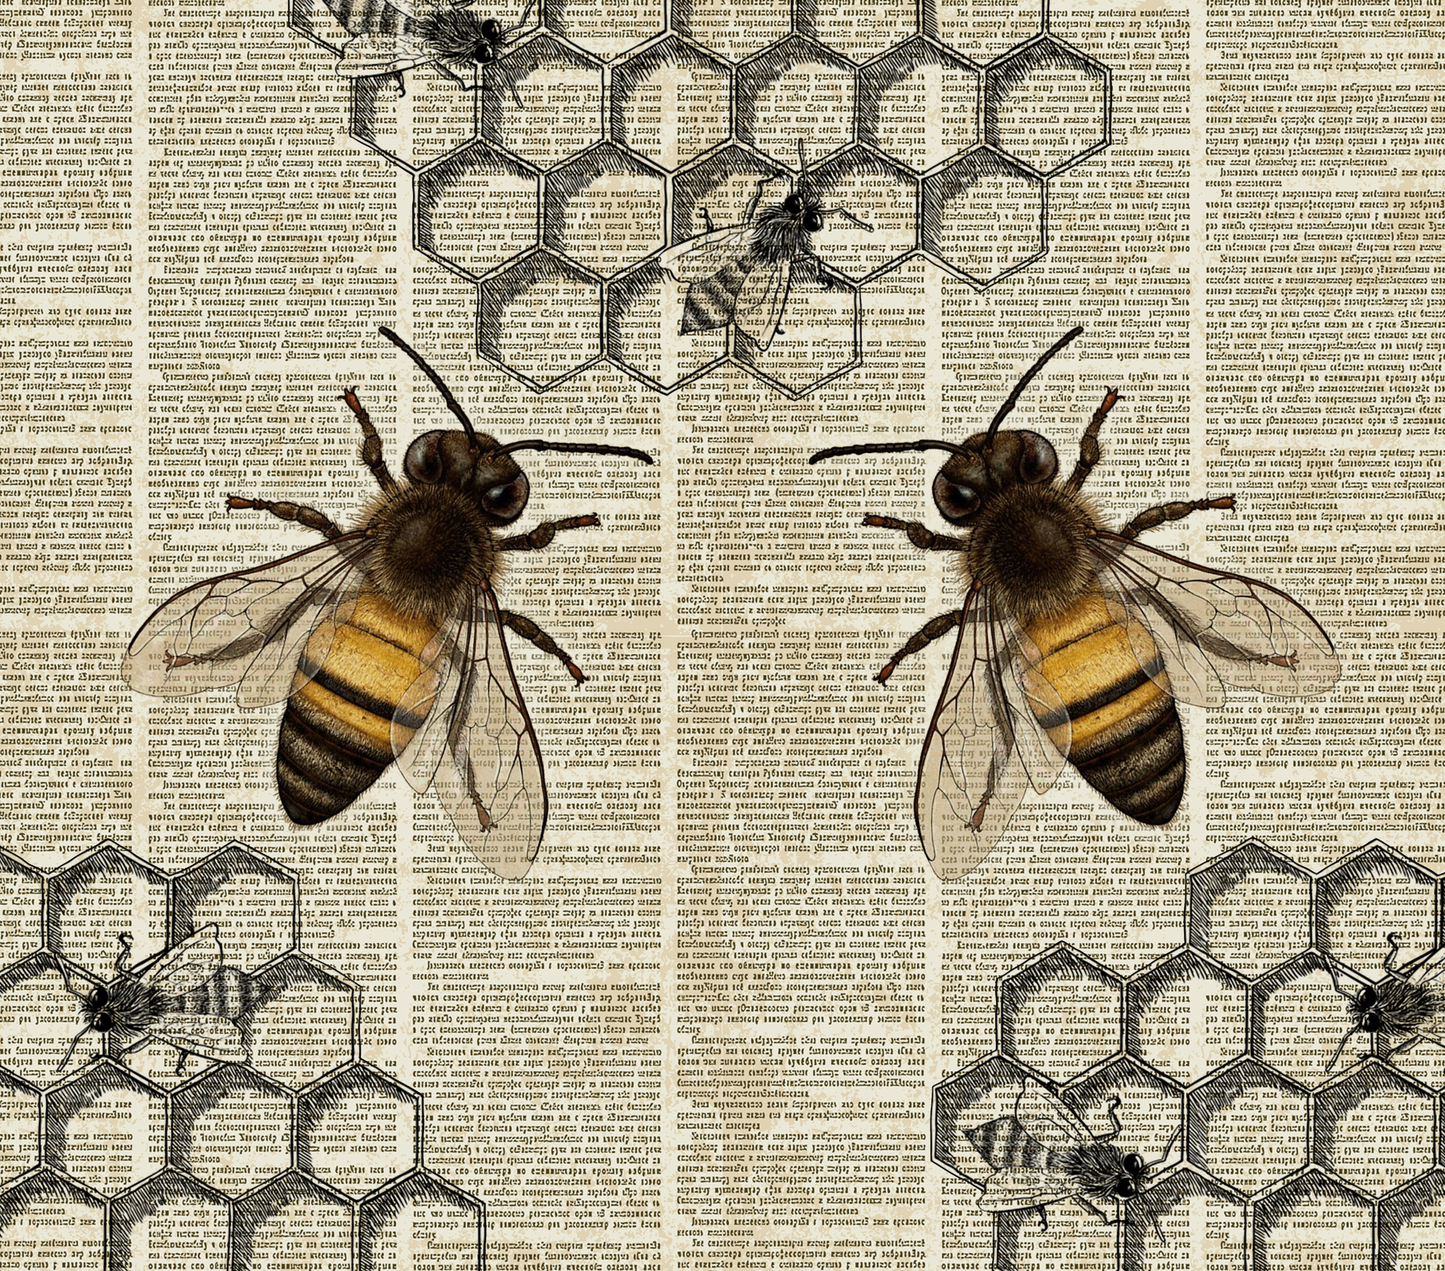 TW1187 bees